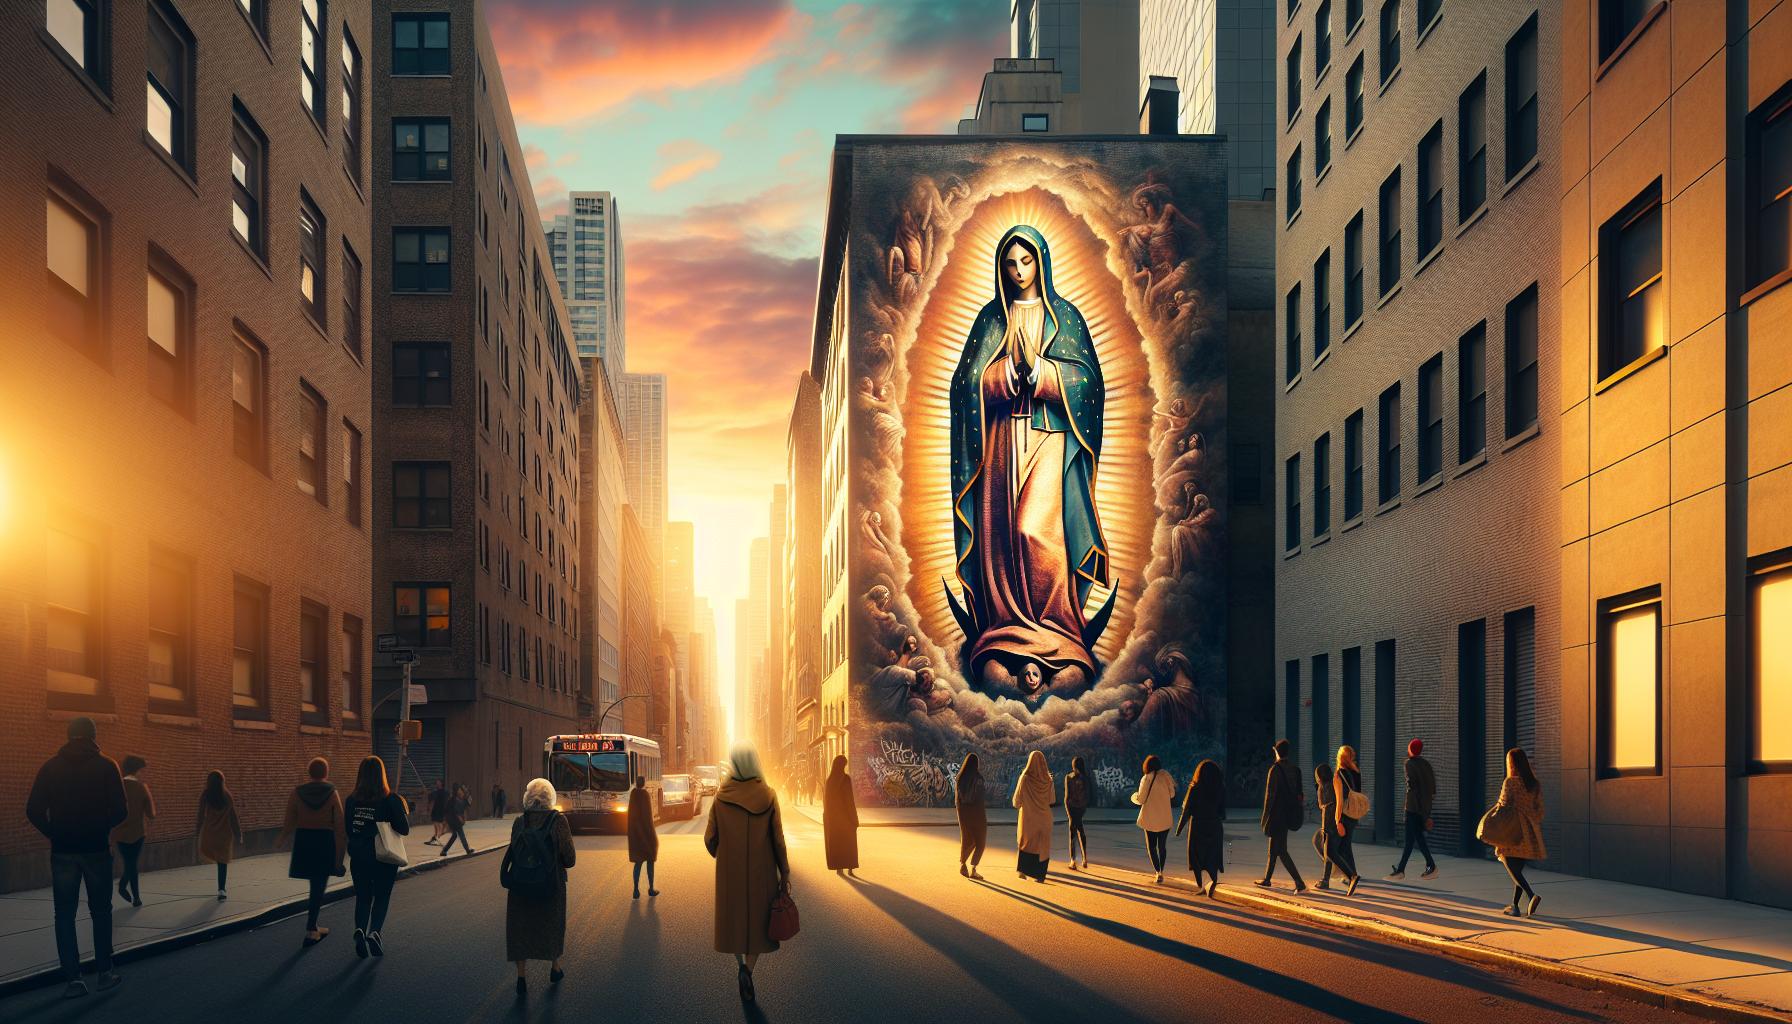 Encontrar una Virgen en la Calle: Impacto y Simbolismo Espiritual